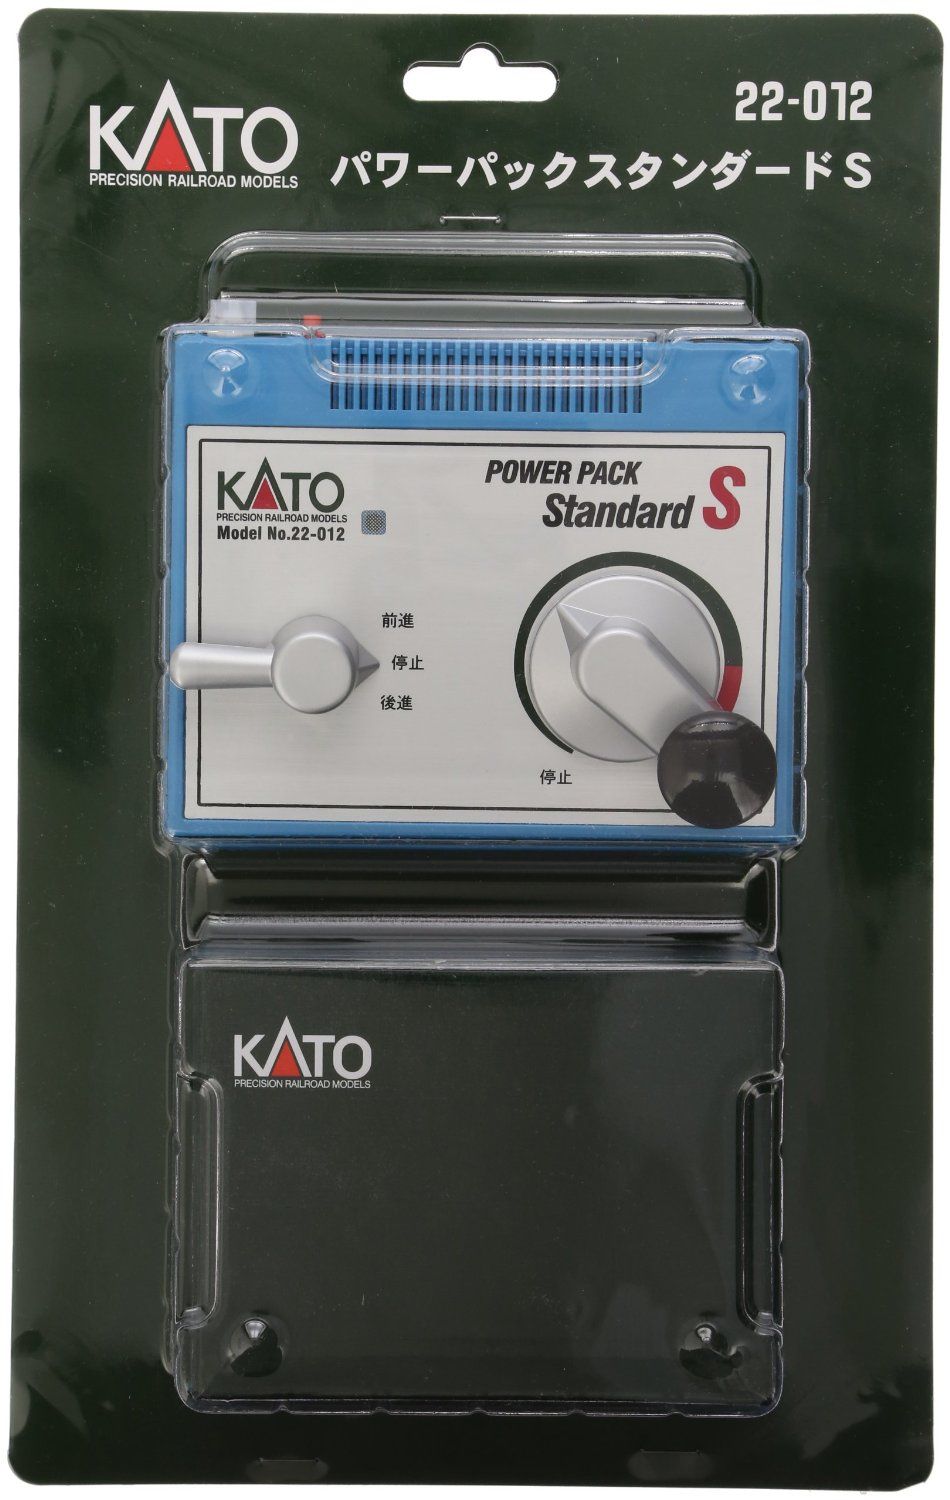 KATO 22-012 Power Pack Standard S - BanzaiHobby